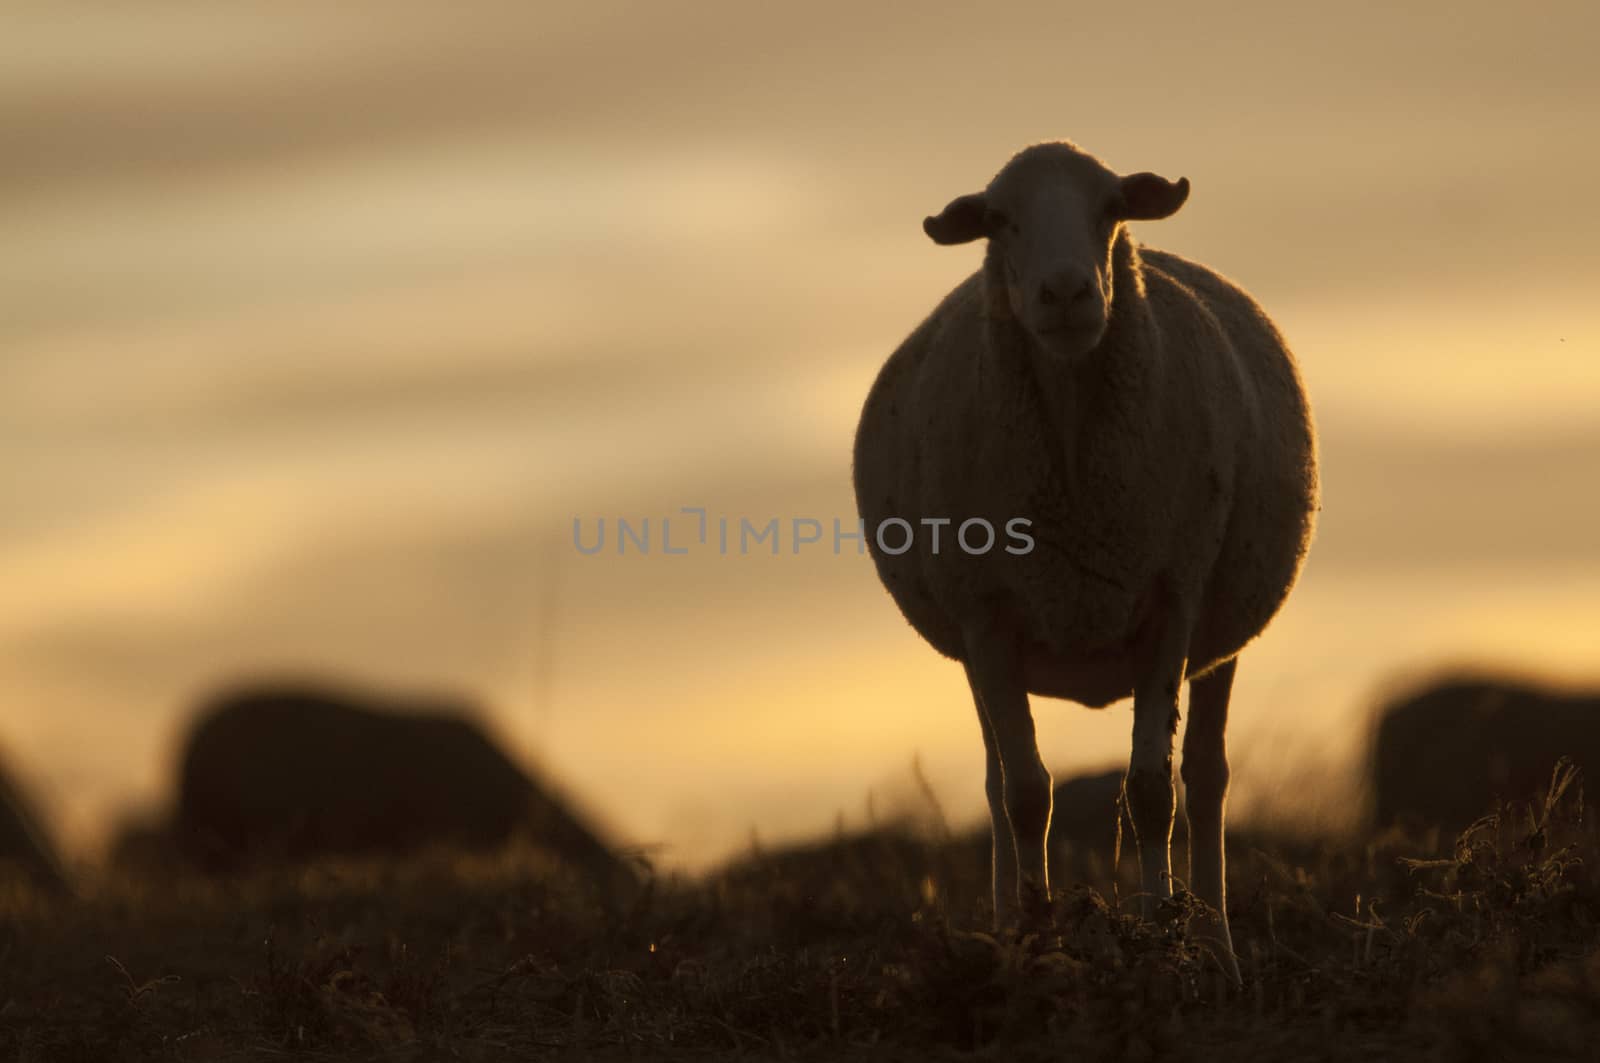 sheep eating at sunset, backlight